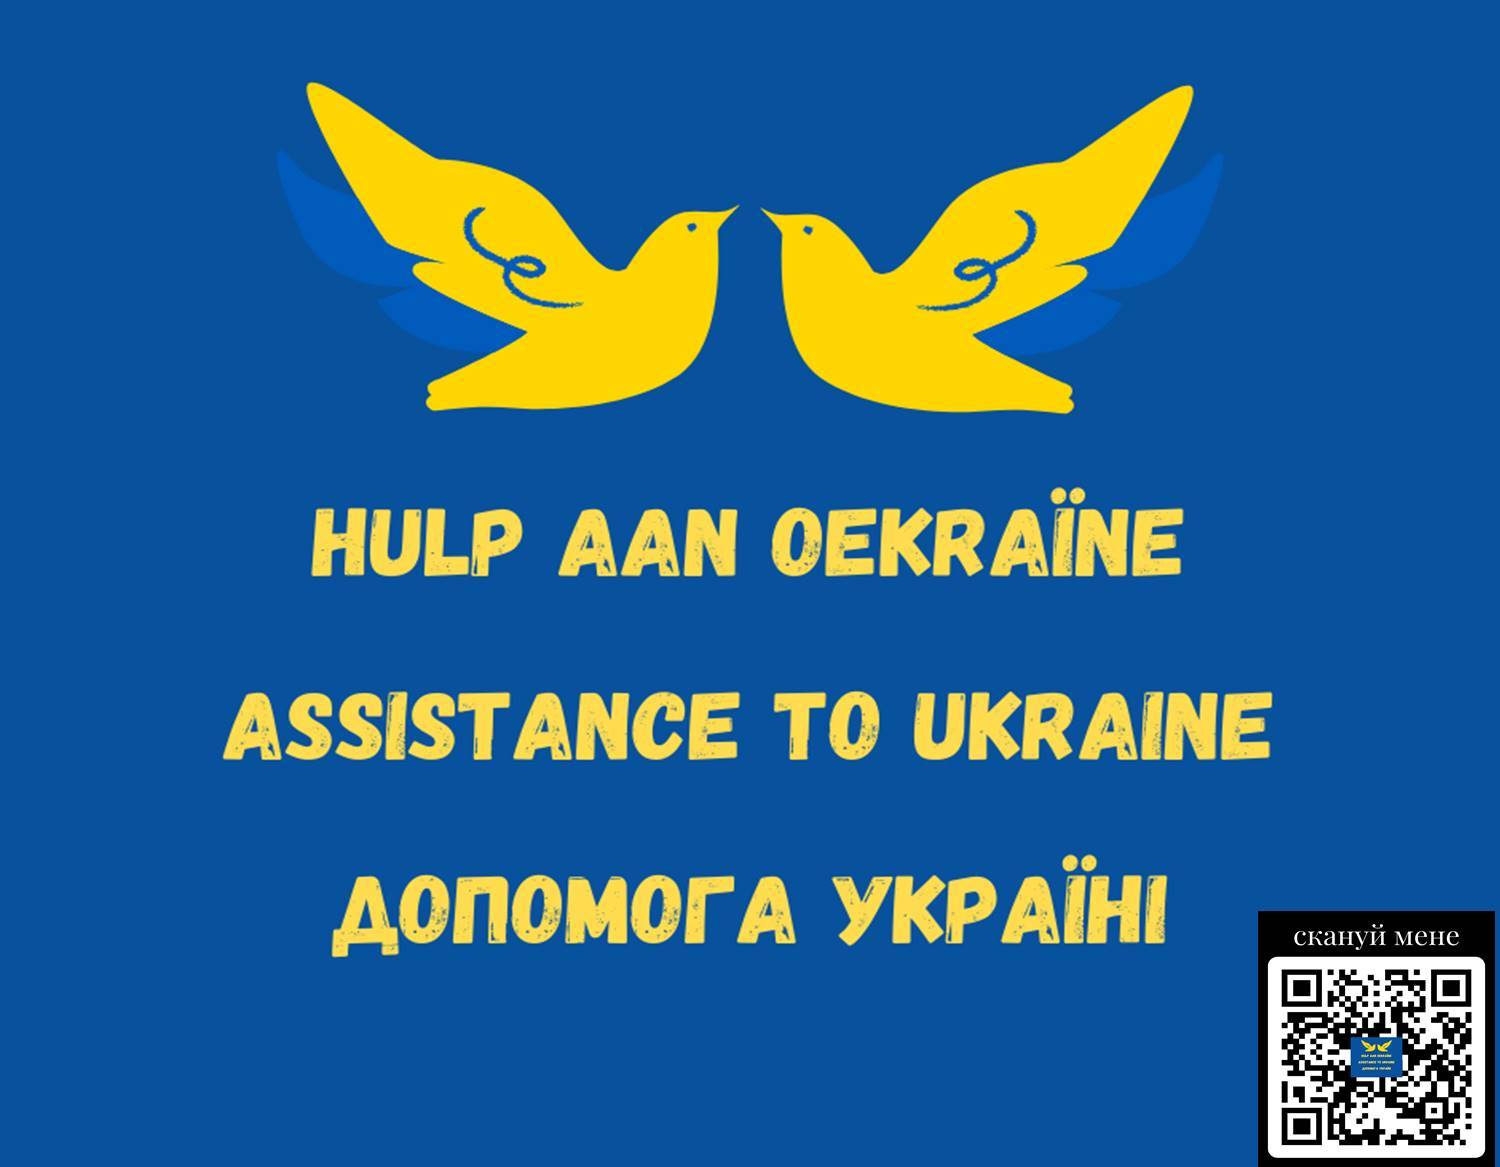 QR-code Kruiskerk Oekraine hulp